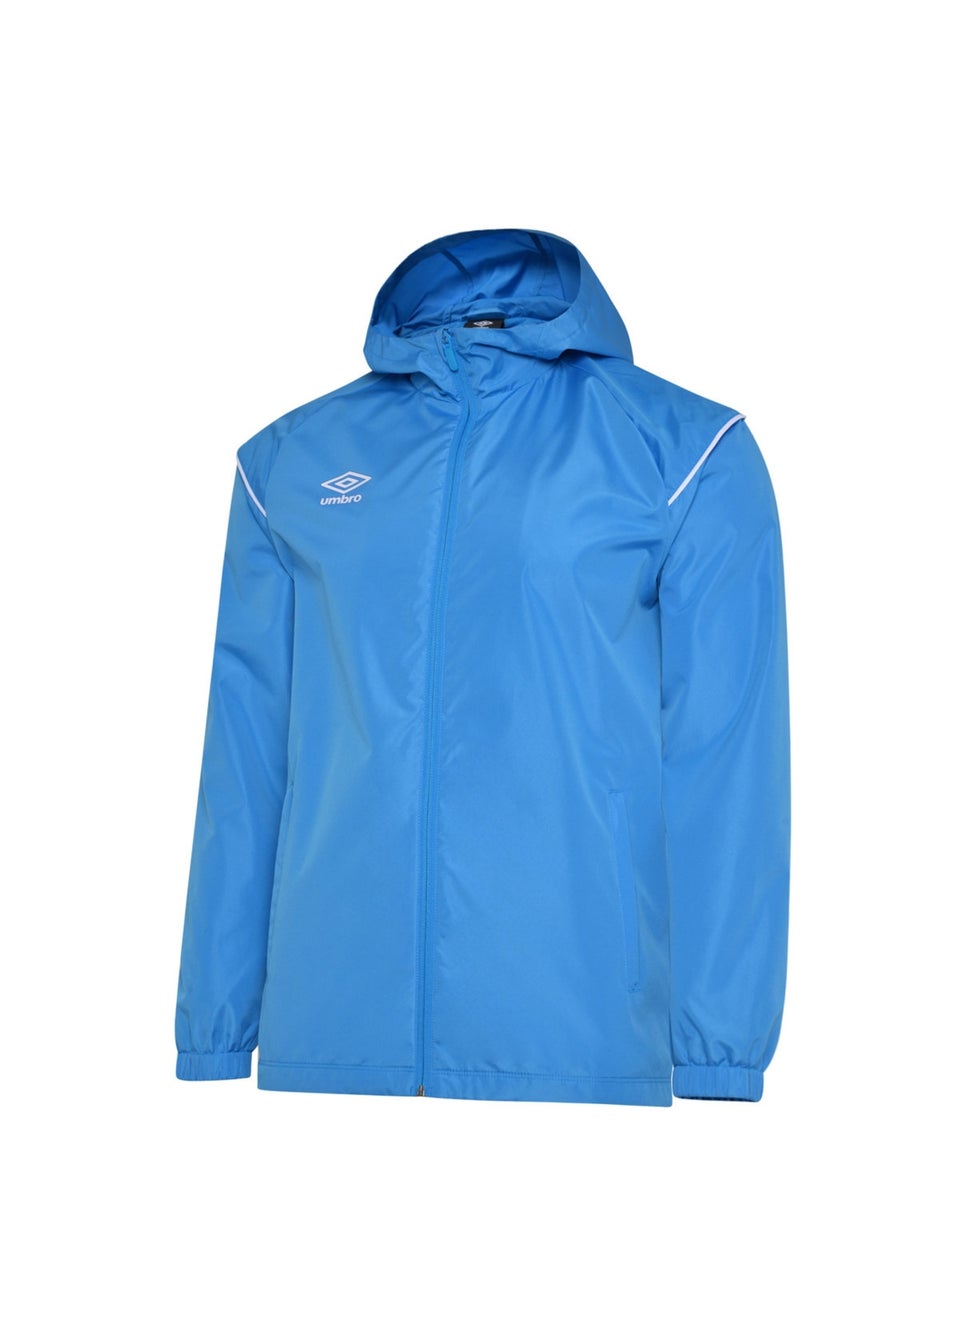 Umbro Kids Sky Blue Hooded Waterproof Jacket (7-13yrs)